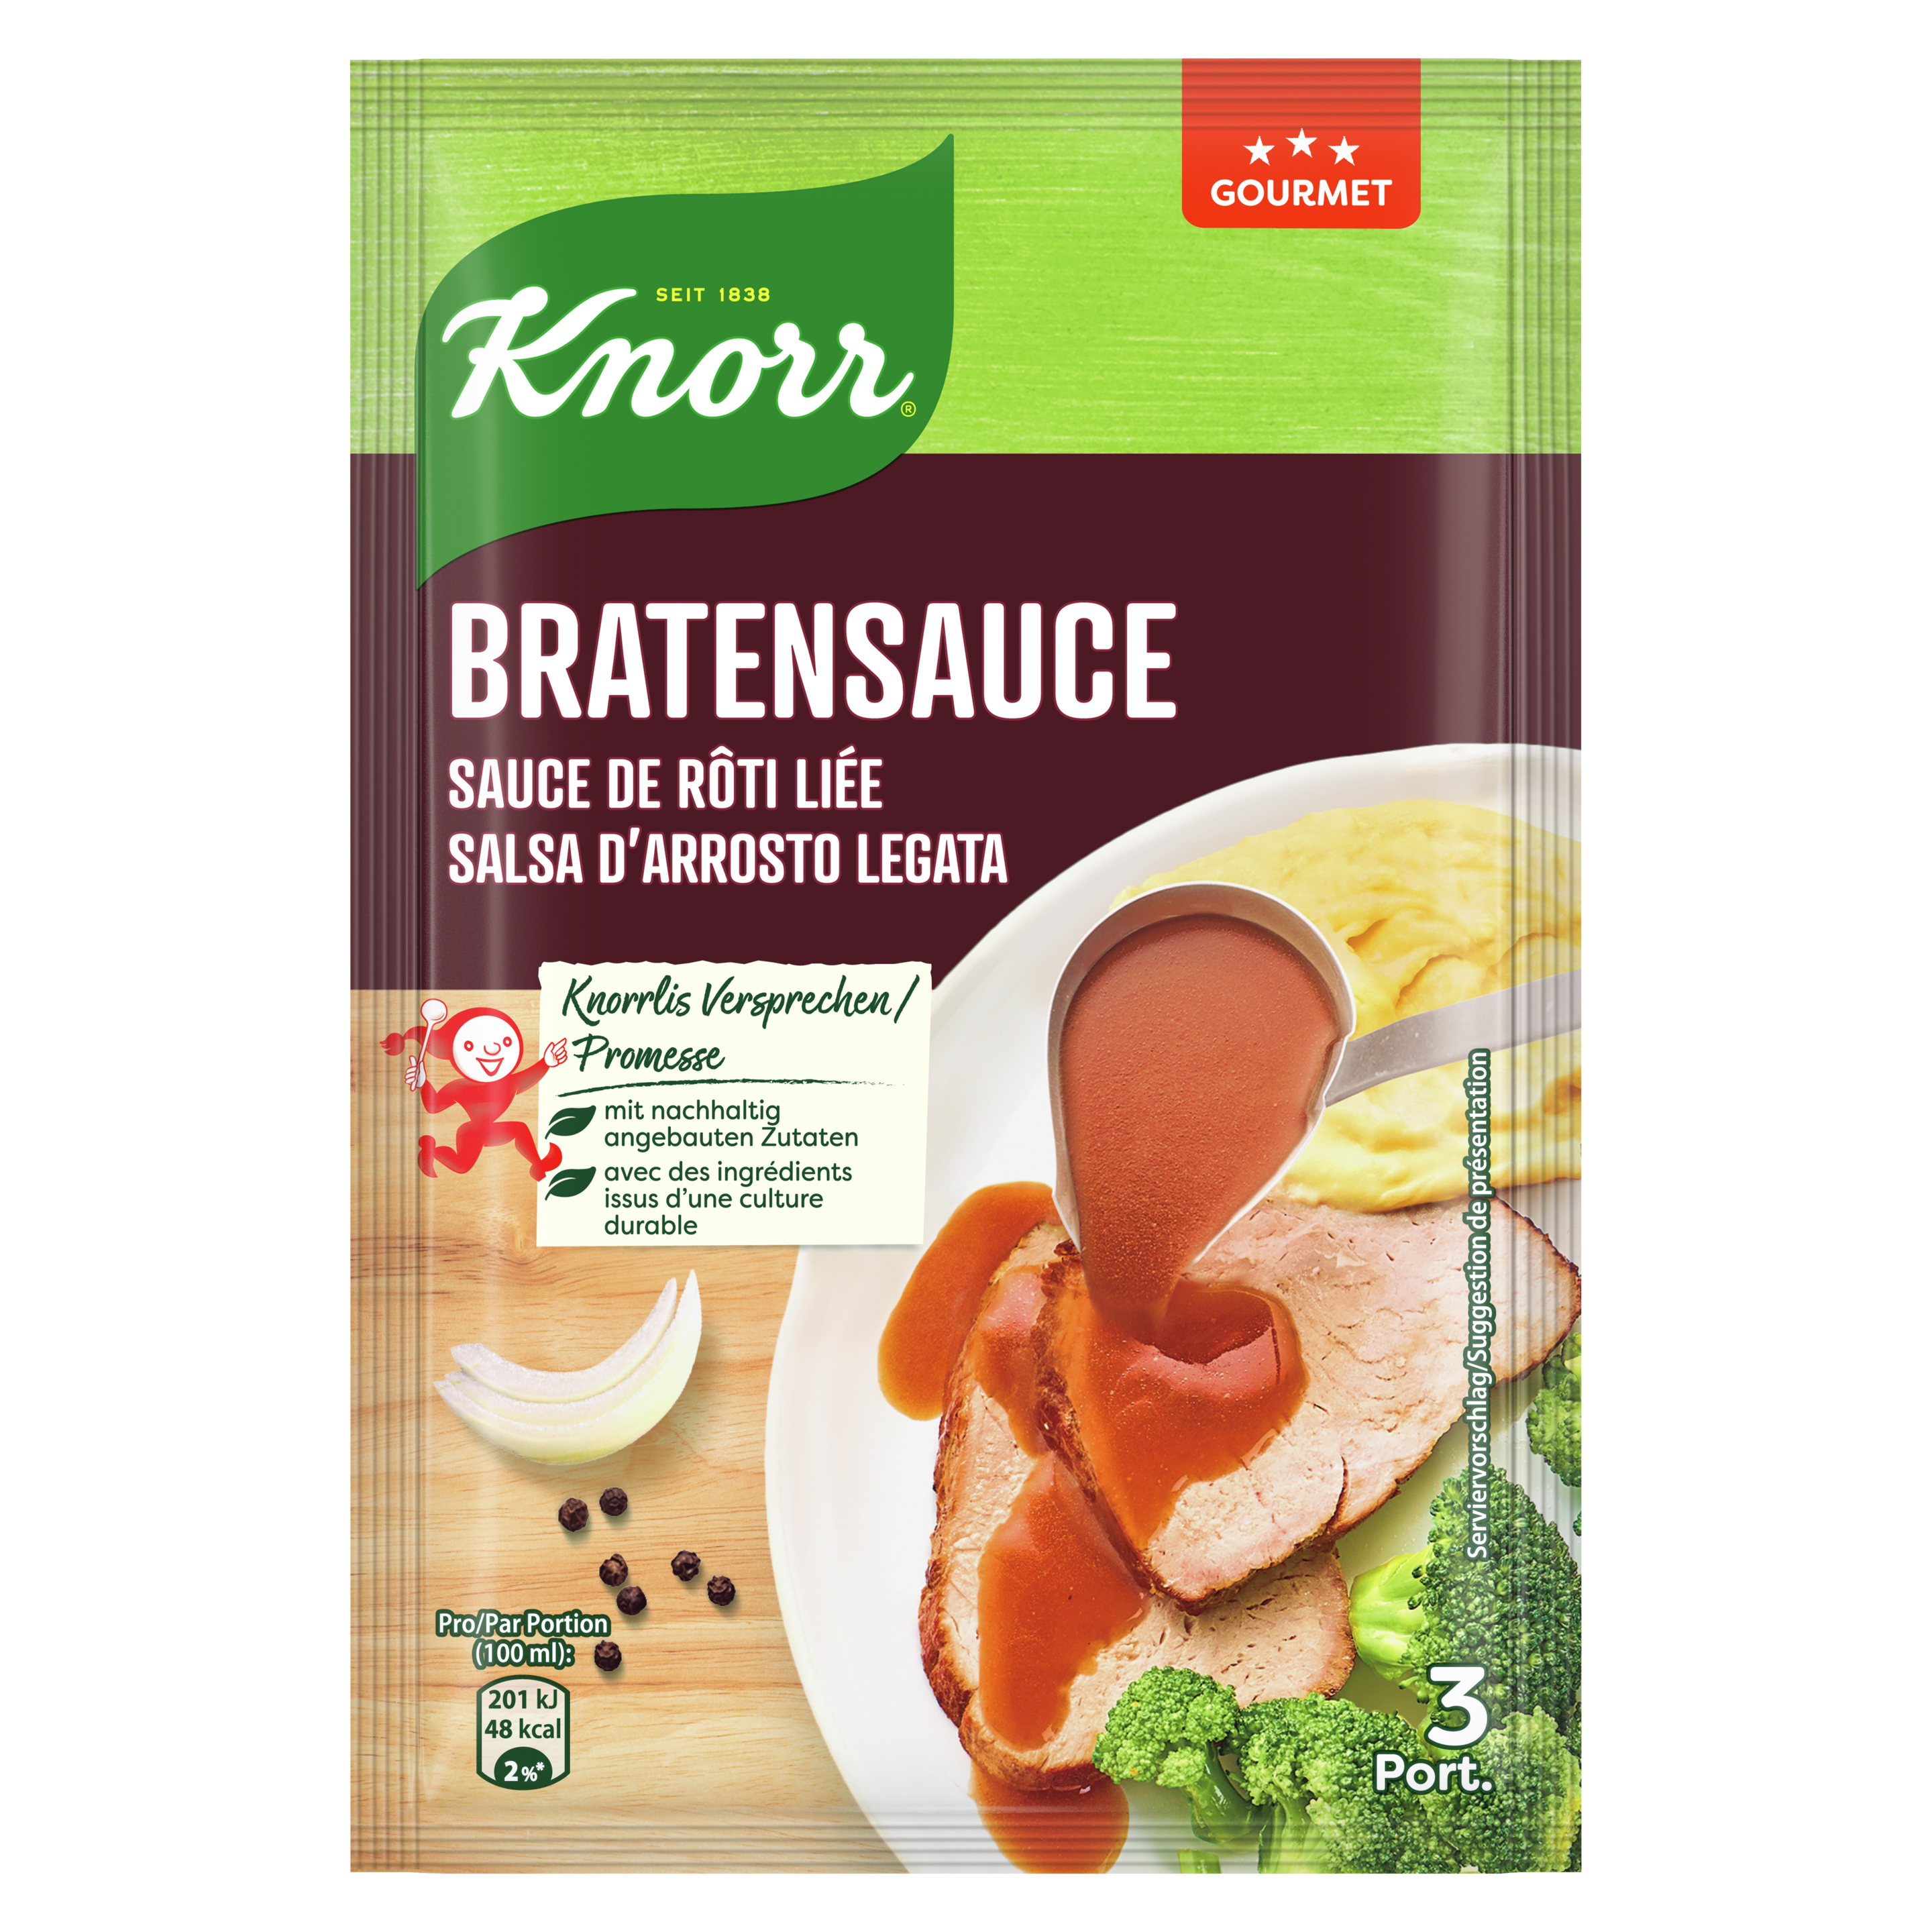 KNORR Sauce de rôti liée gourmet sachet 3 portions